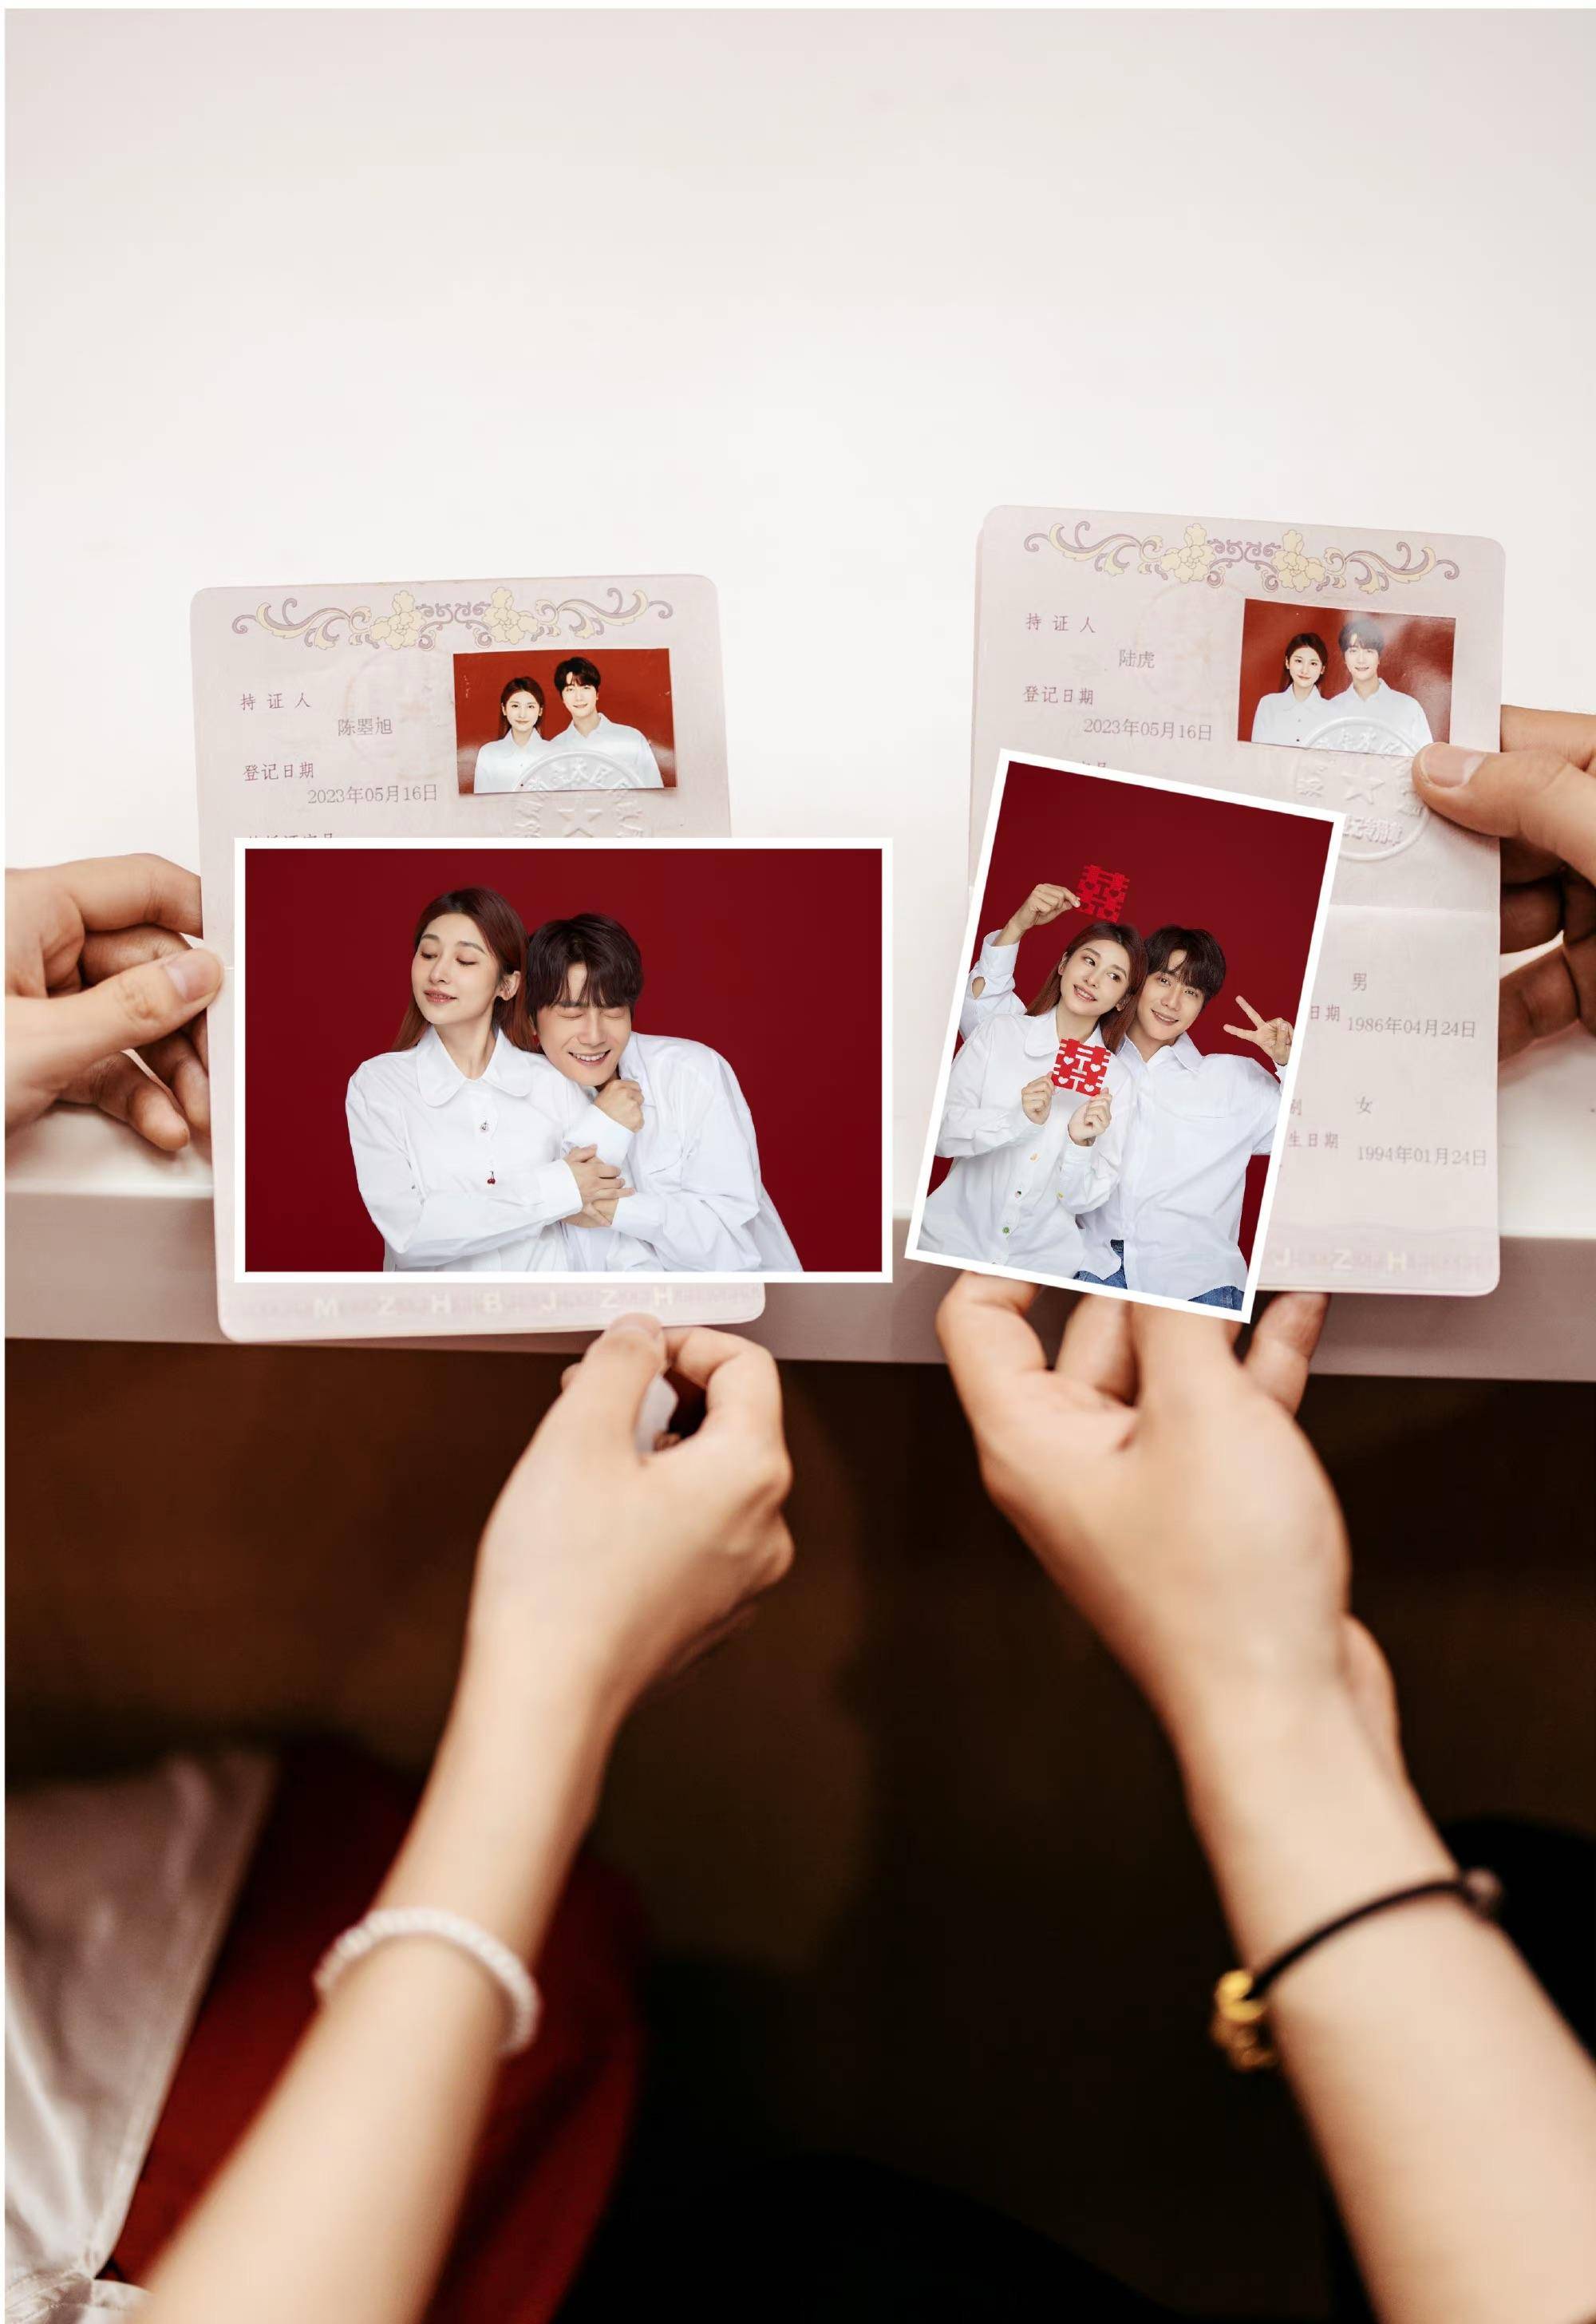 天津结婚证照片尺寸图片